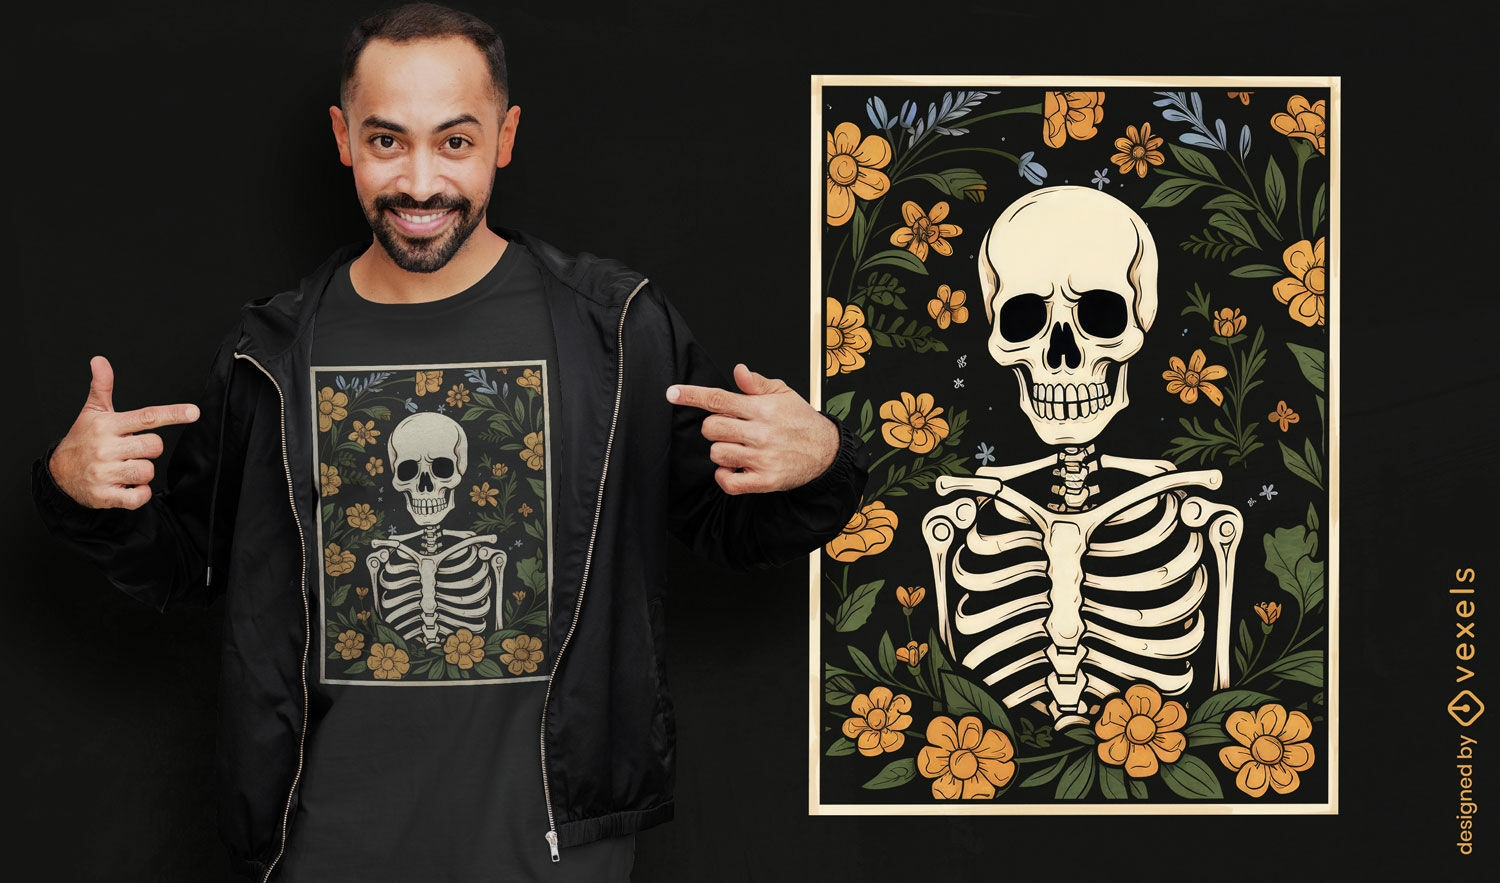 Diseño de camiseta oscura de esqueleto con flores.